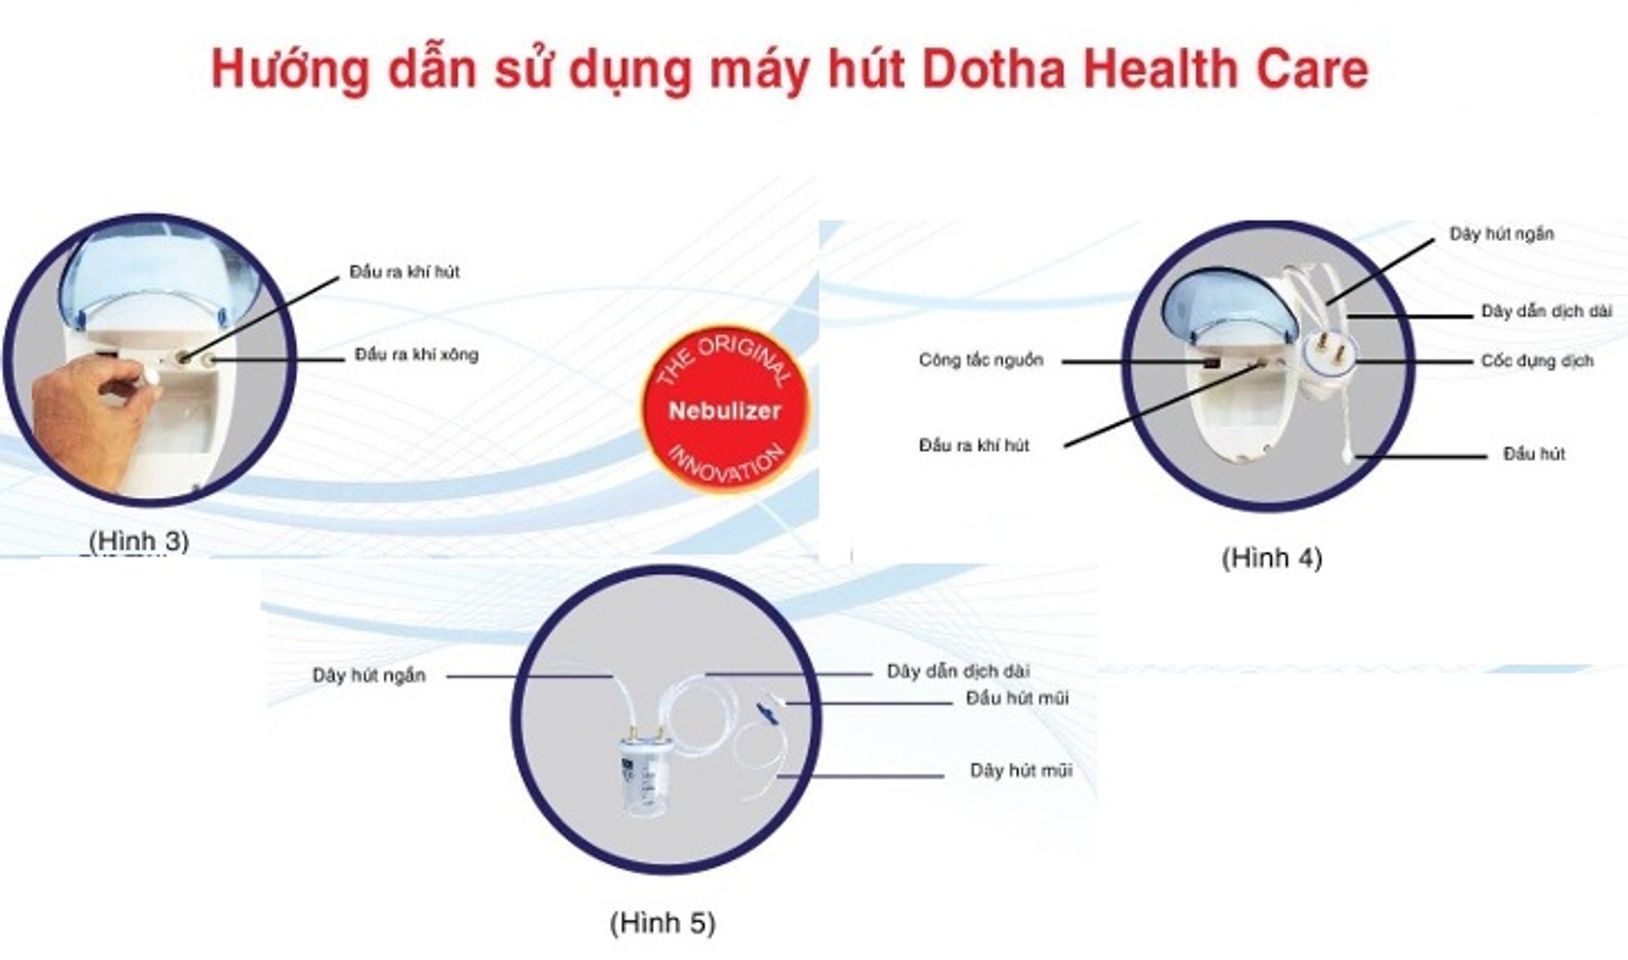  máy Dotha Health Care với tính năng hút mũi